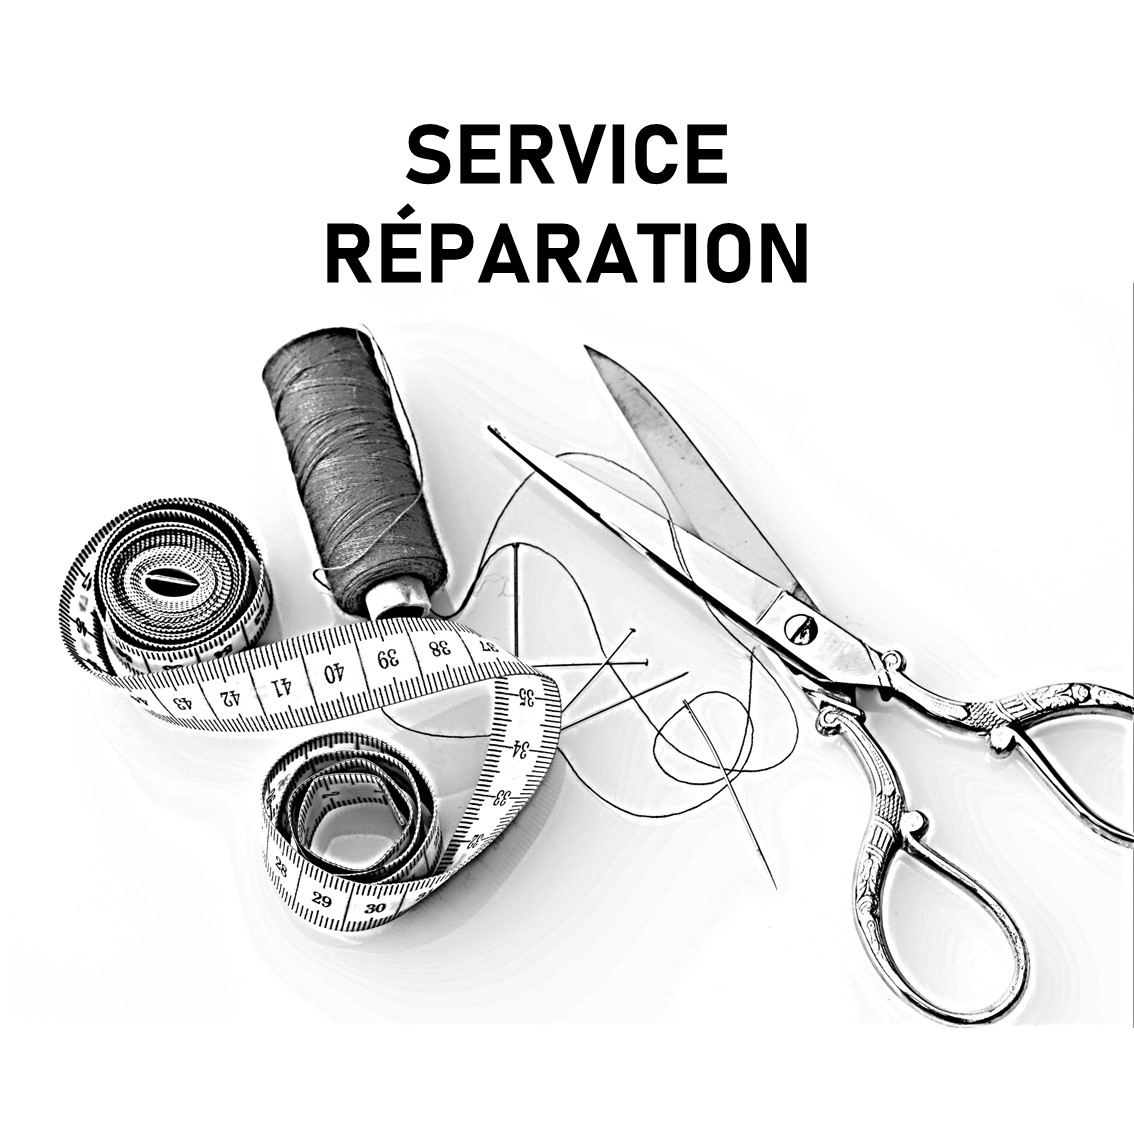 Service réparation